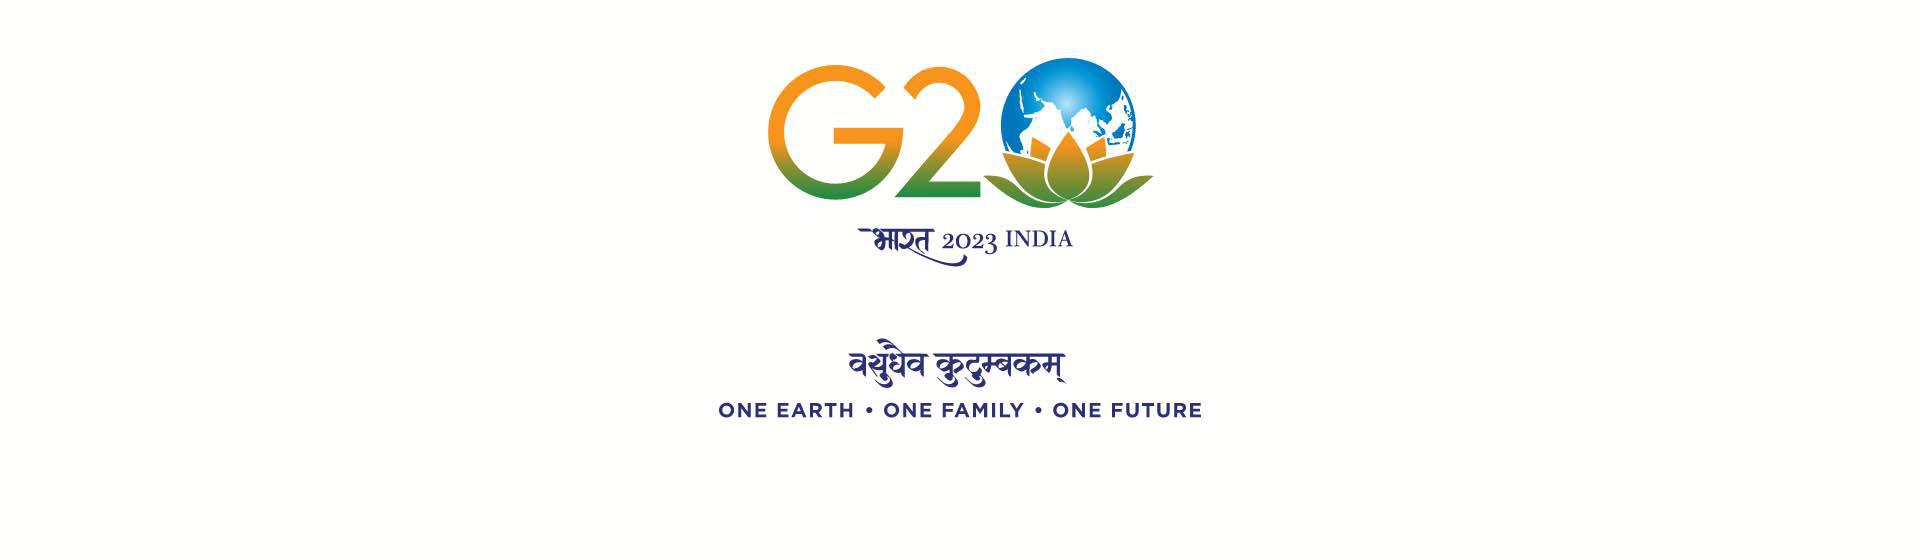 G20 India - 2023